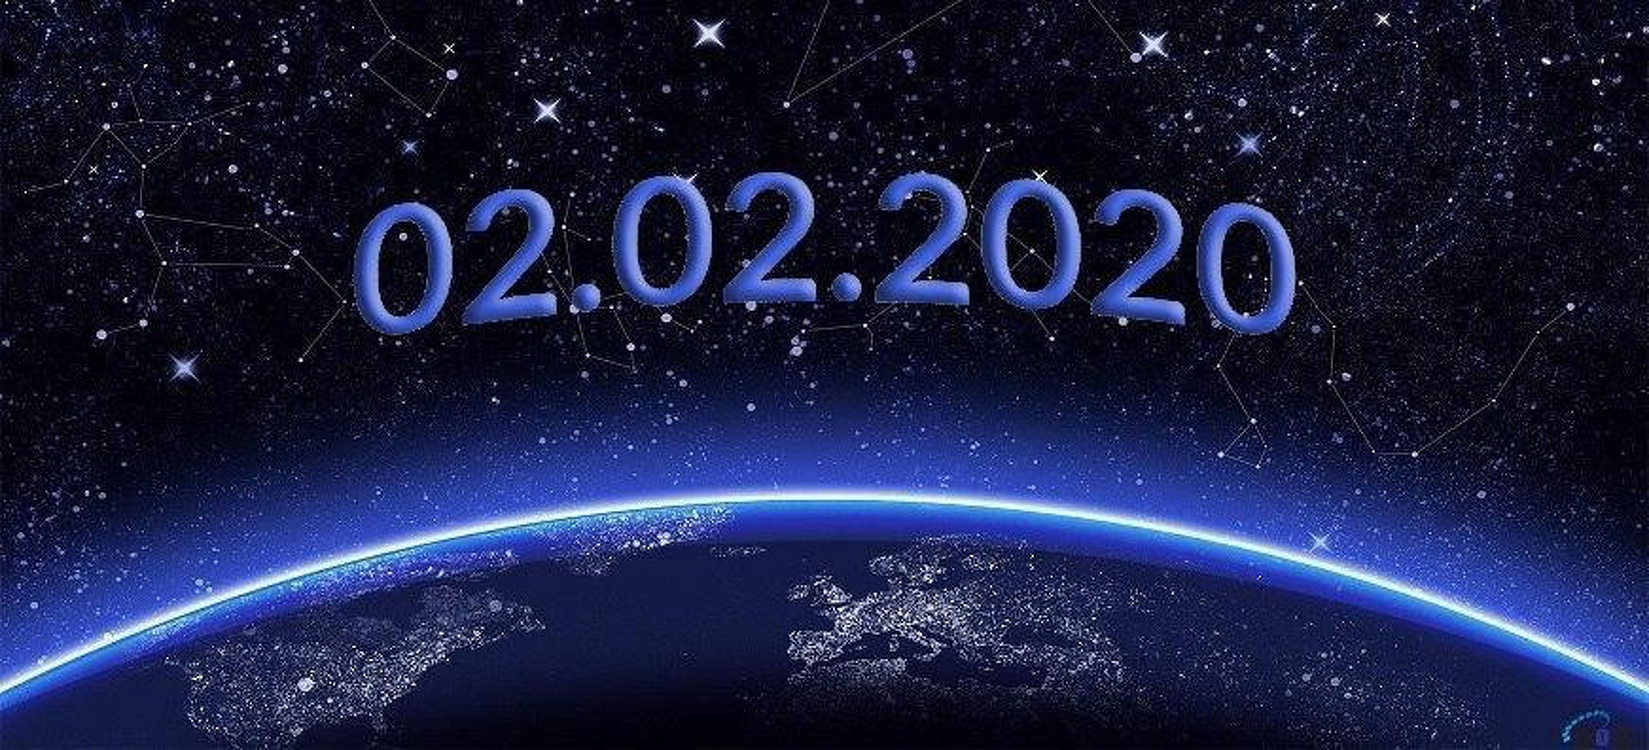 Близится уникальная дата - комбинация цифр 02 02 2020. — Today.kg